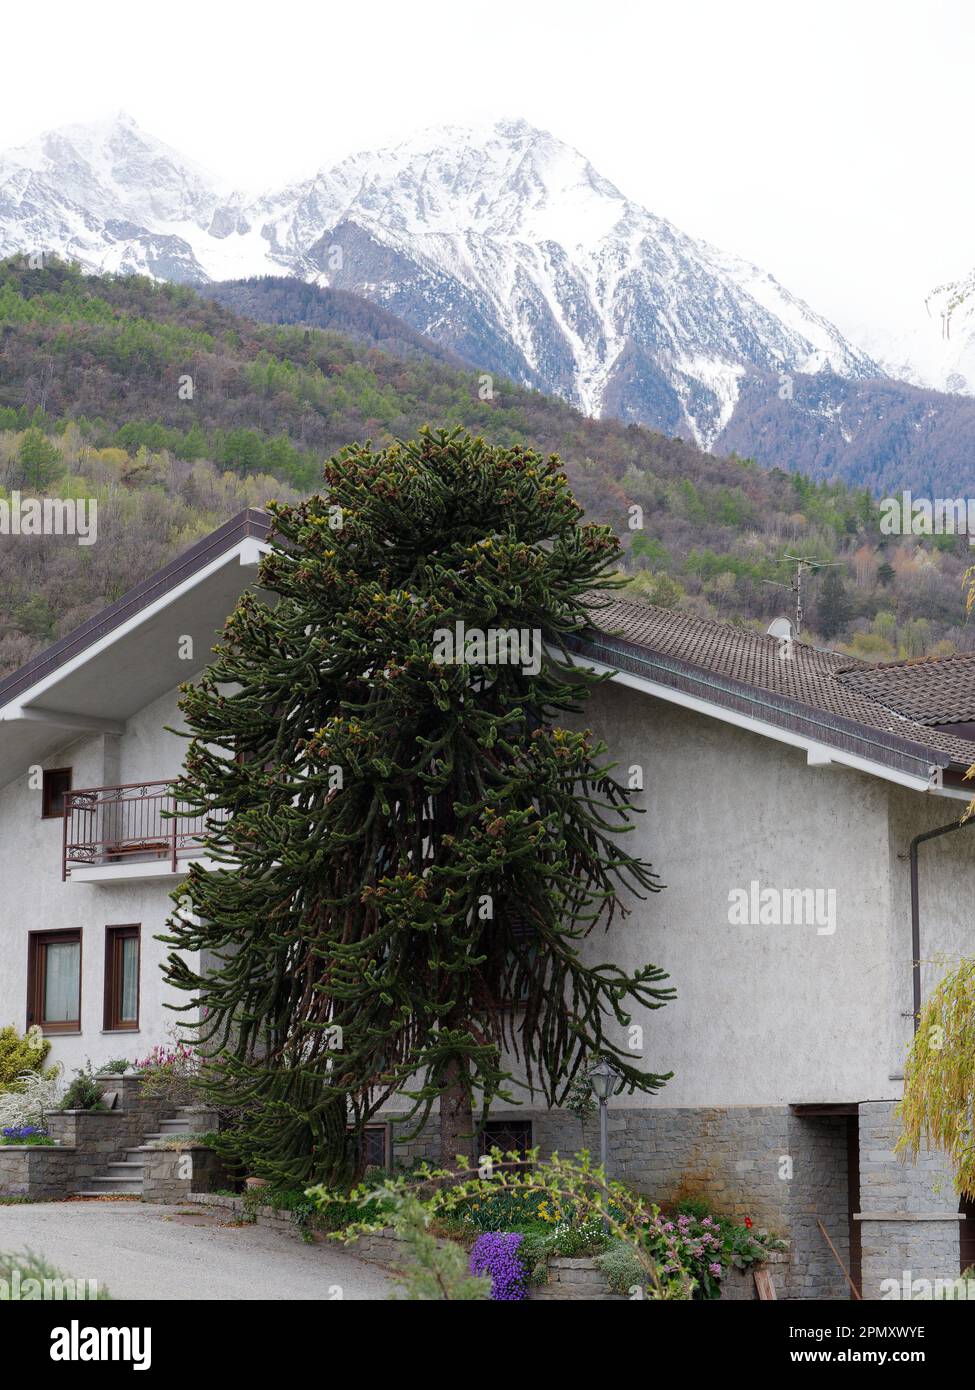 Albero dalla forma insolita accanto a una casa a Fenis, in Valle d'Aosta. Montagna innevata alle spalle Foto Stock